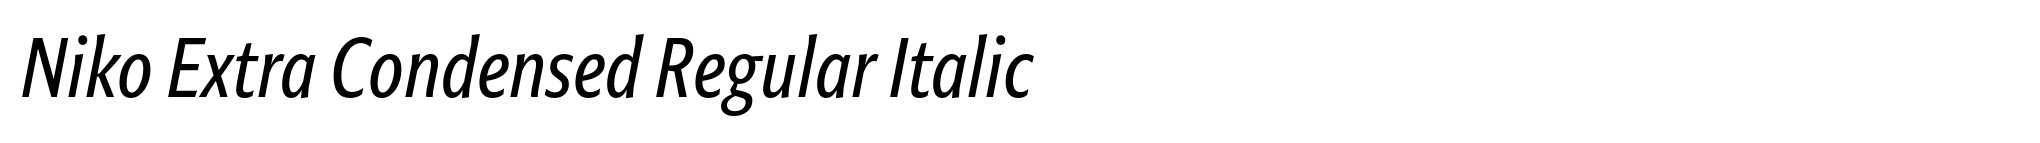 Niko Extra Condensed Regular Italic image